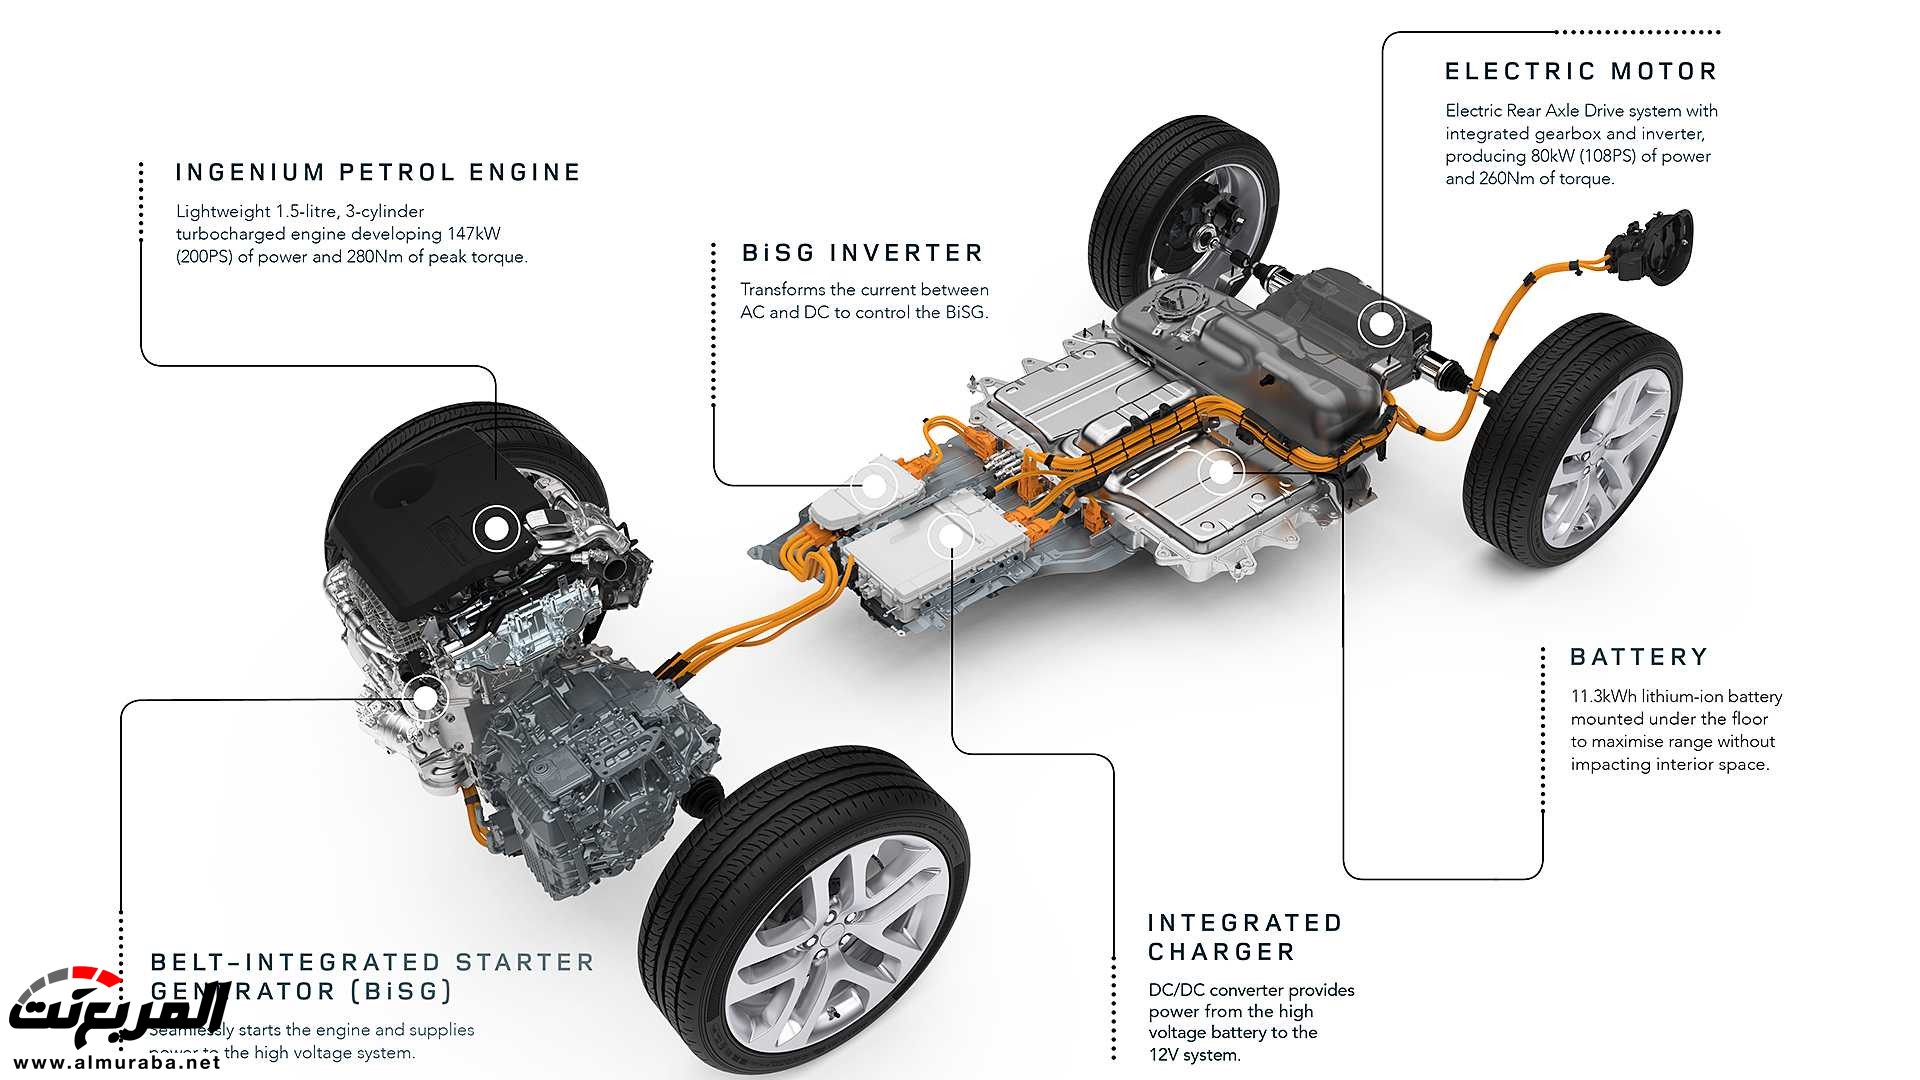 اهم 7 معلومات عن رنج روفر ايفوك 2020 الجديدة كلياً Range Rover Evoque 77